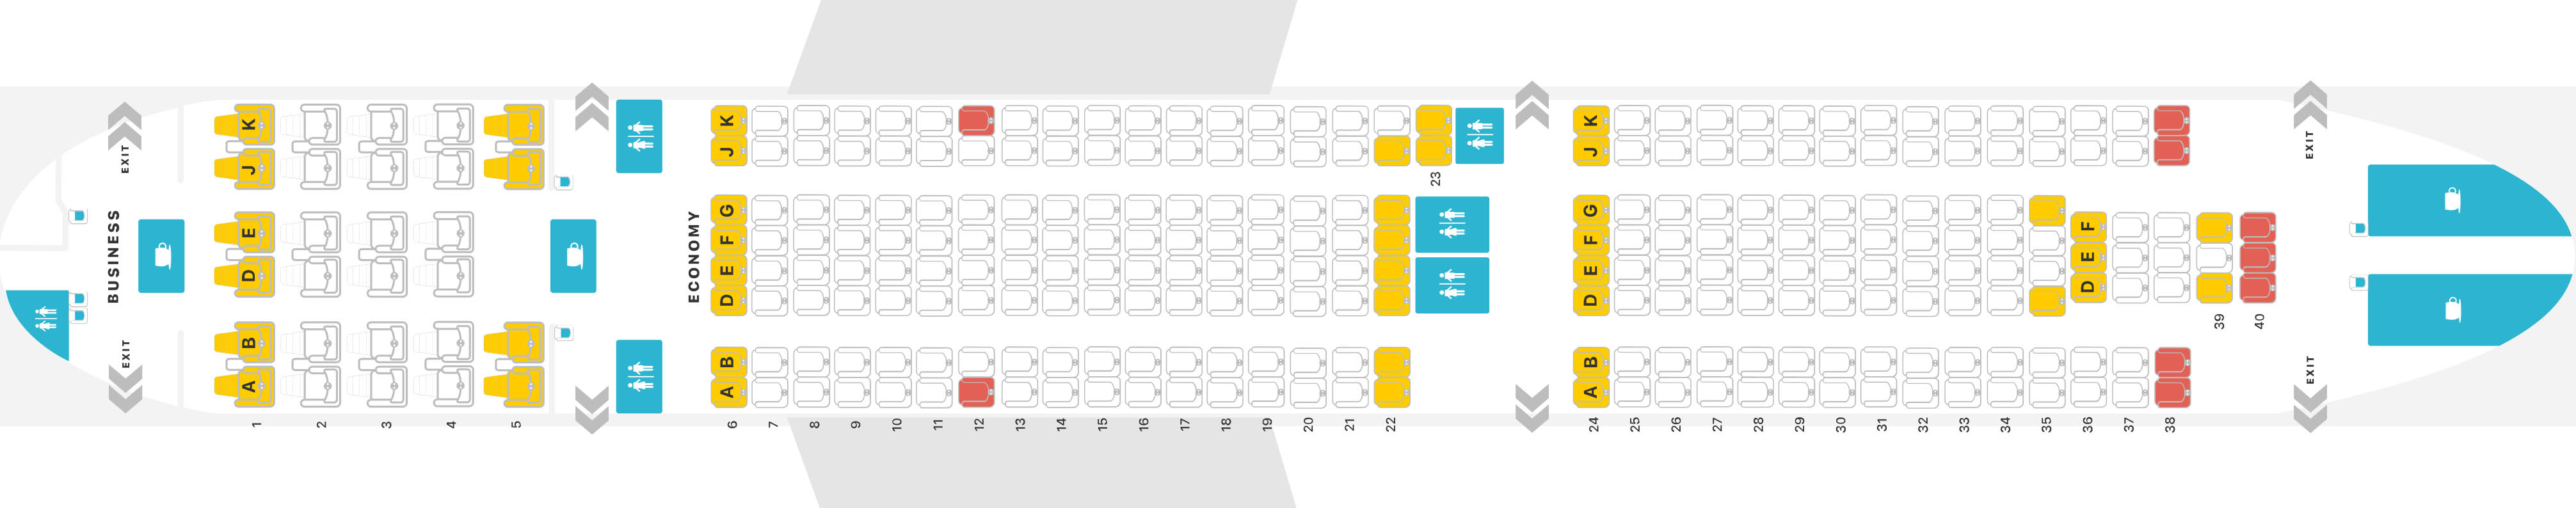 ✈ Самолет \ufeffAirbus A330-300: нумерация мест в салоне, схема посадочных мест,лучшие места